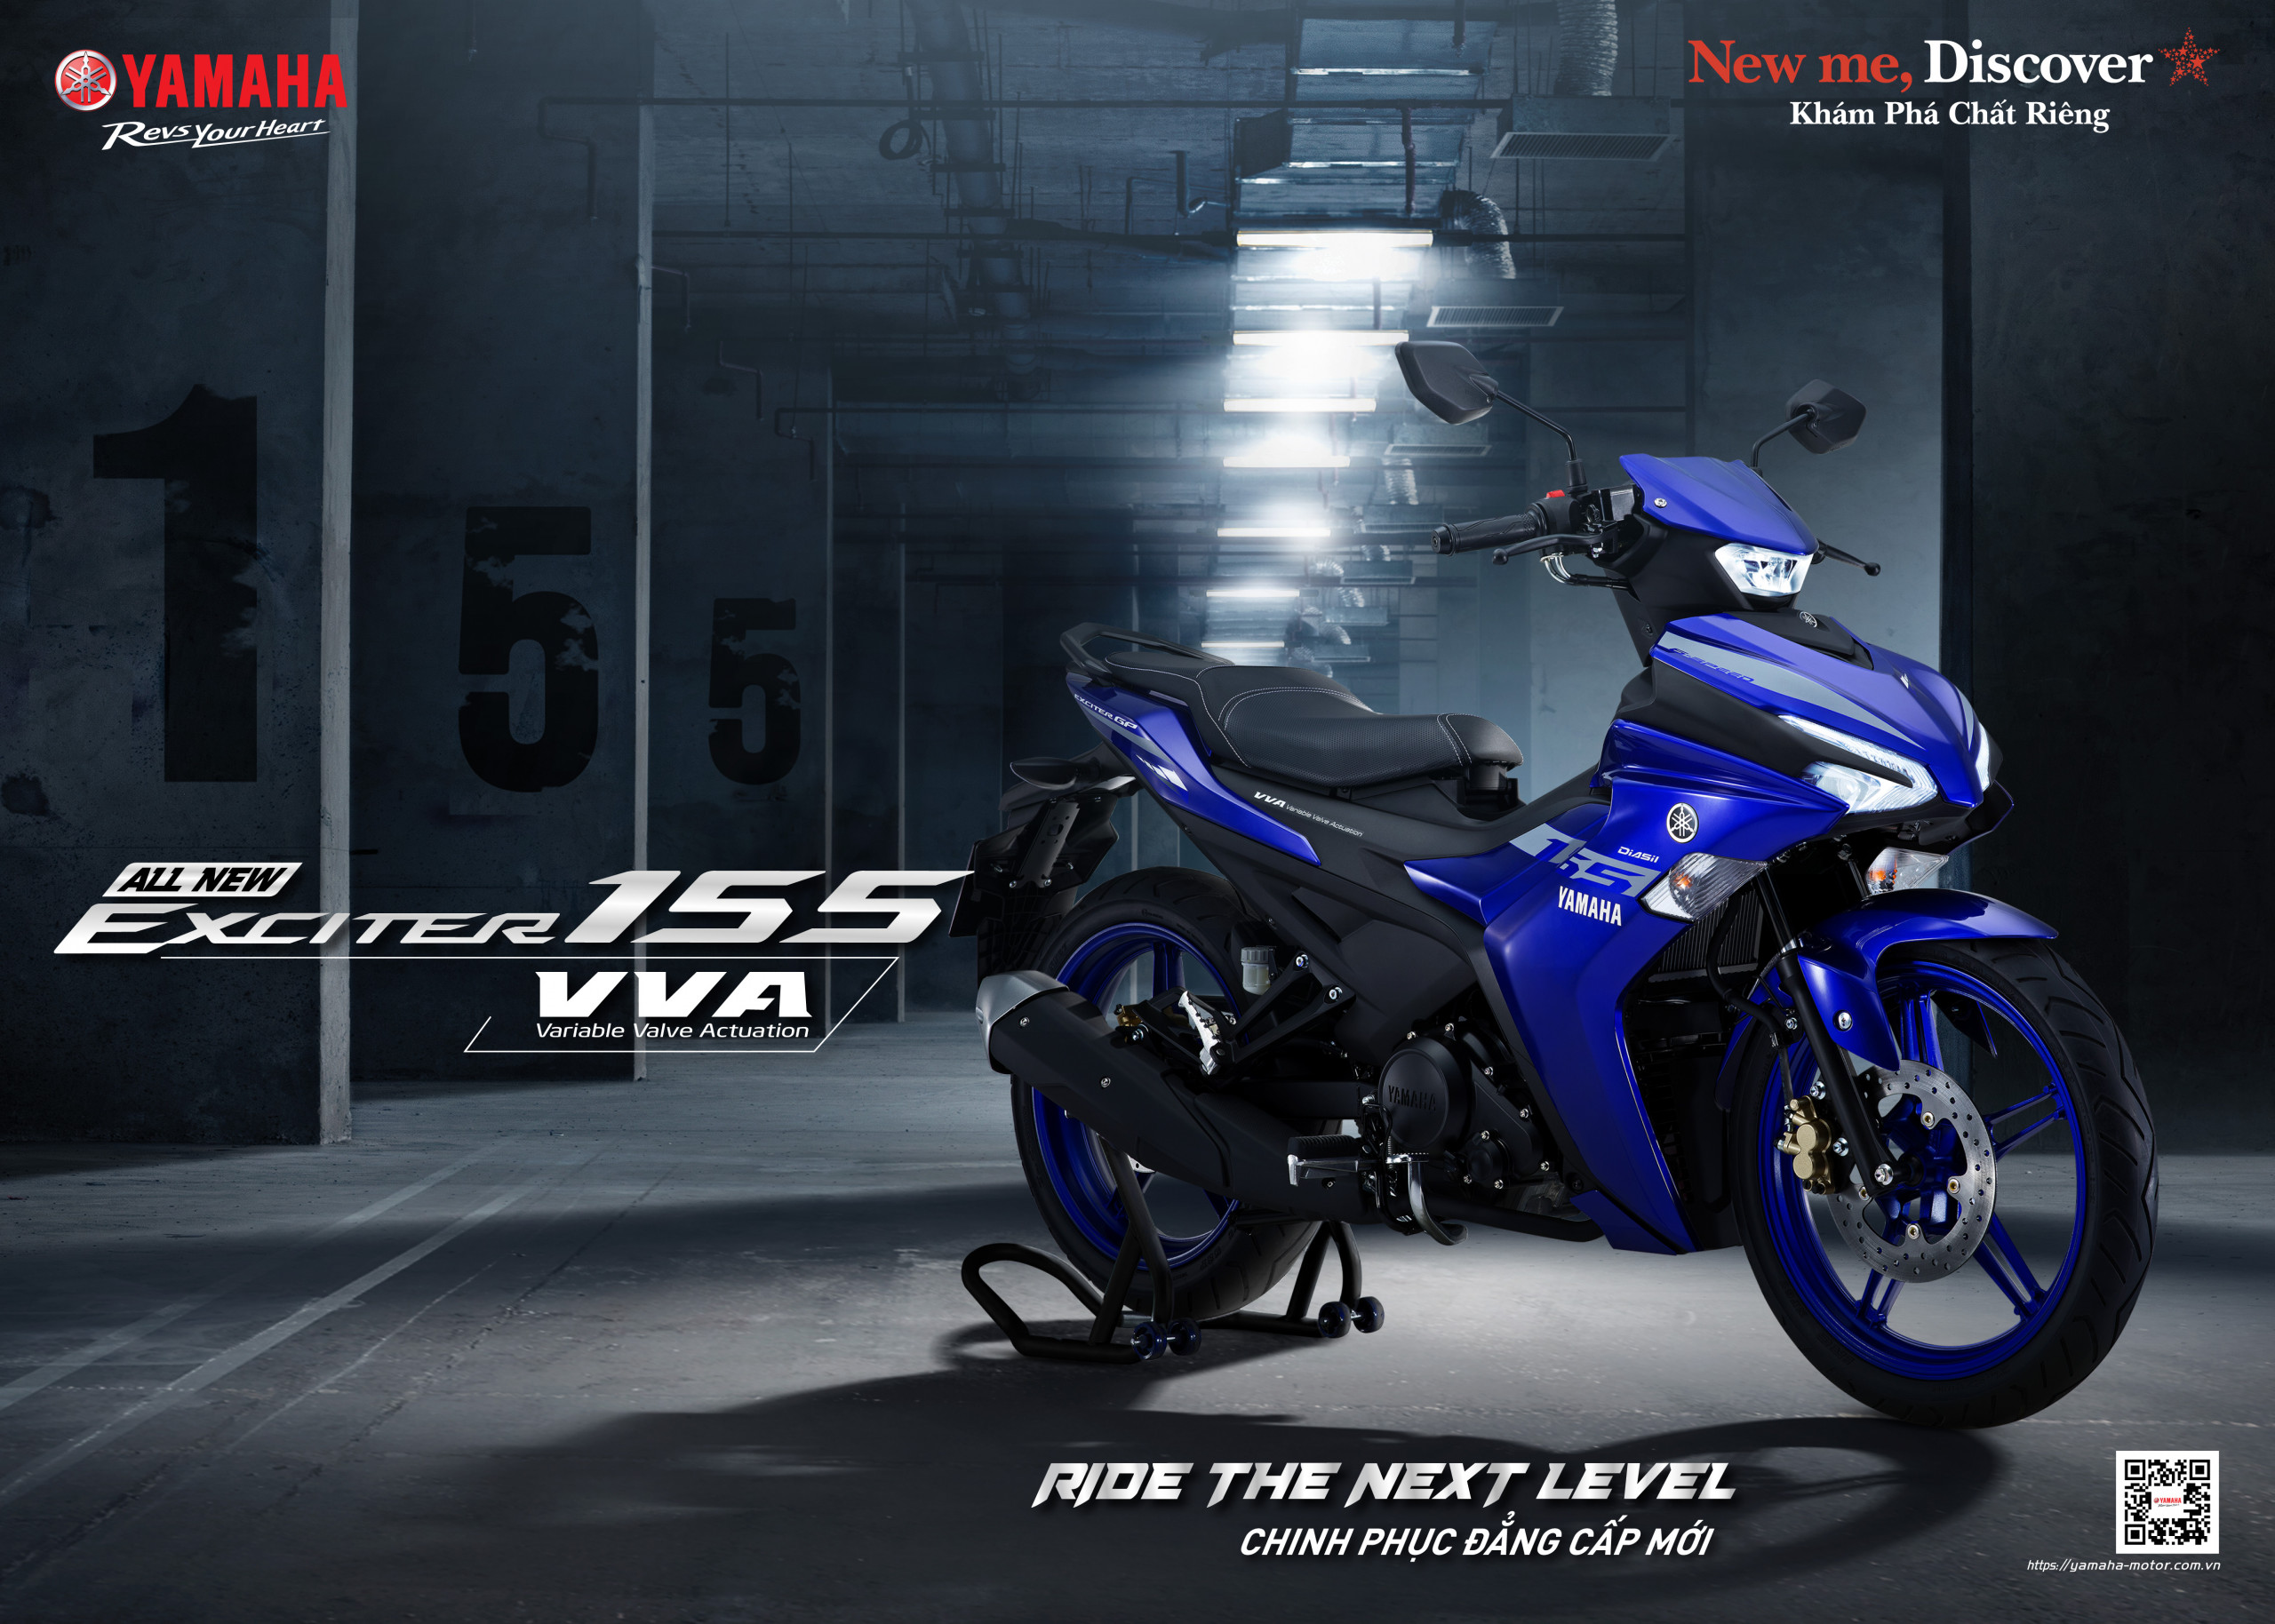 Yamaha Exciter 155 VVA phiên bản đặc biệt ra mắt khách hàng Việt